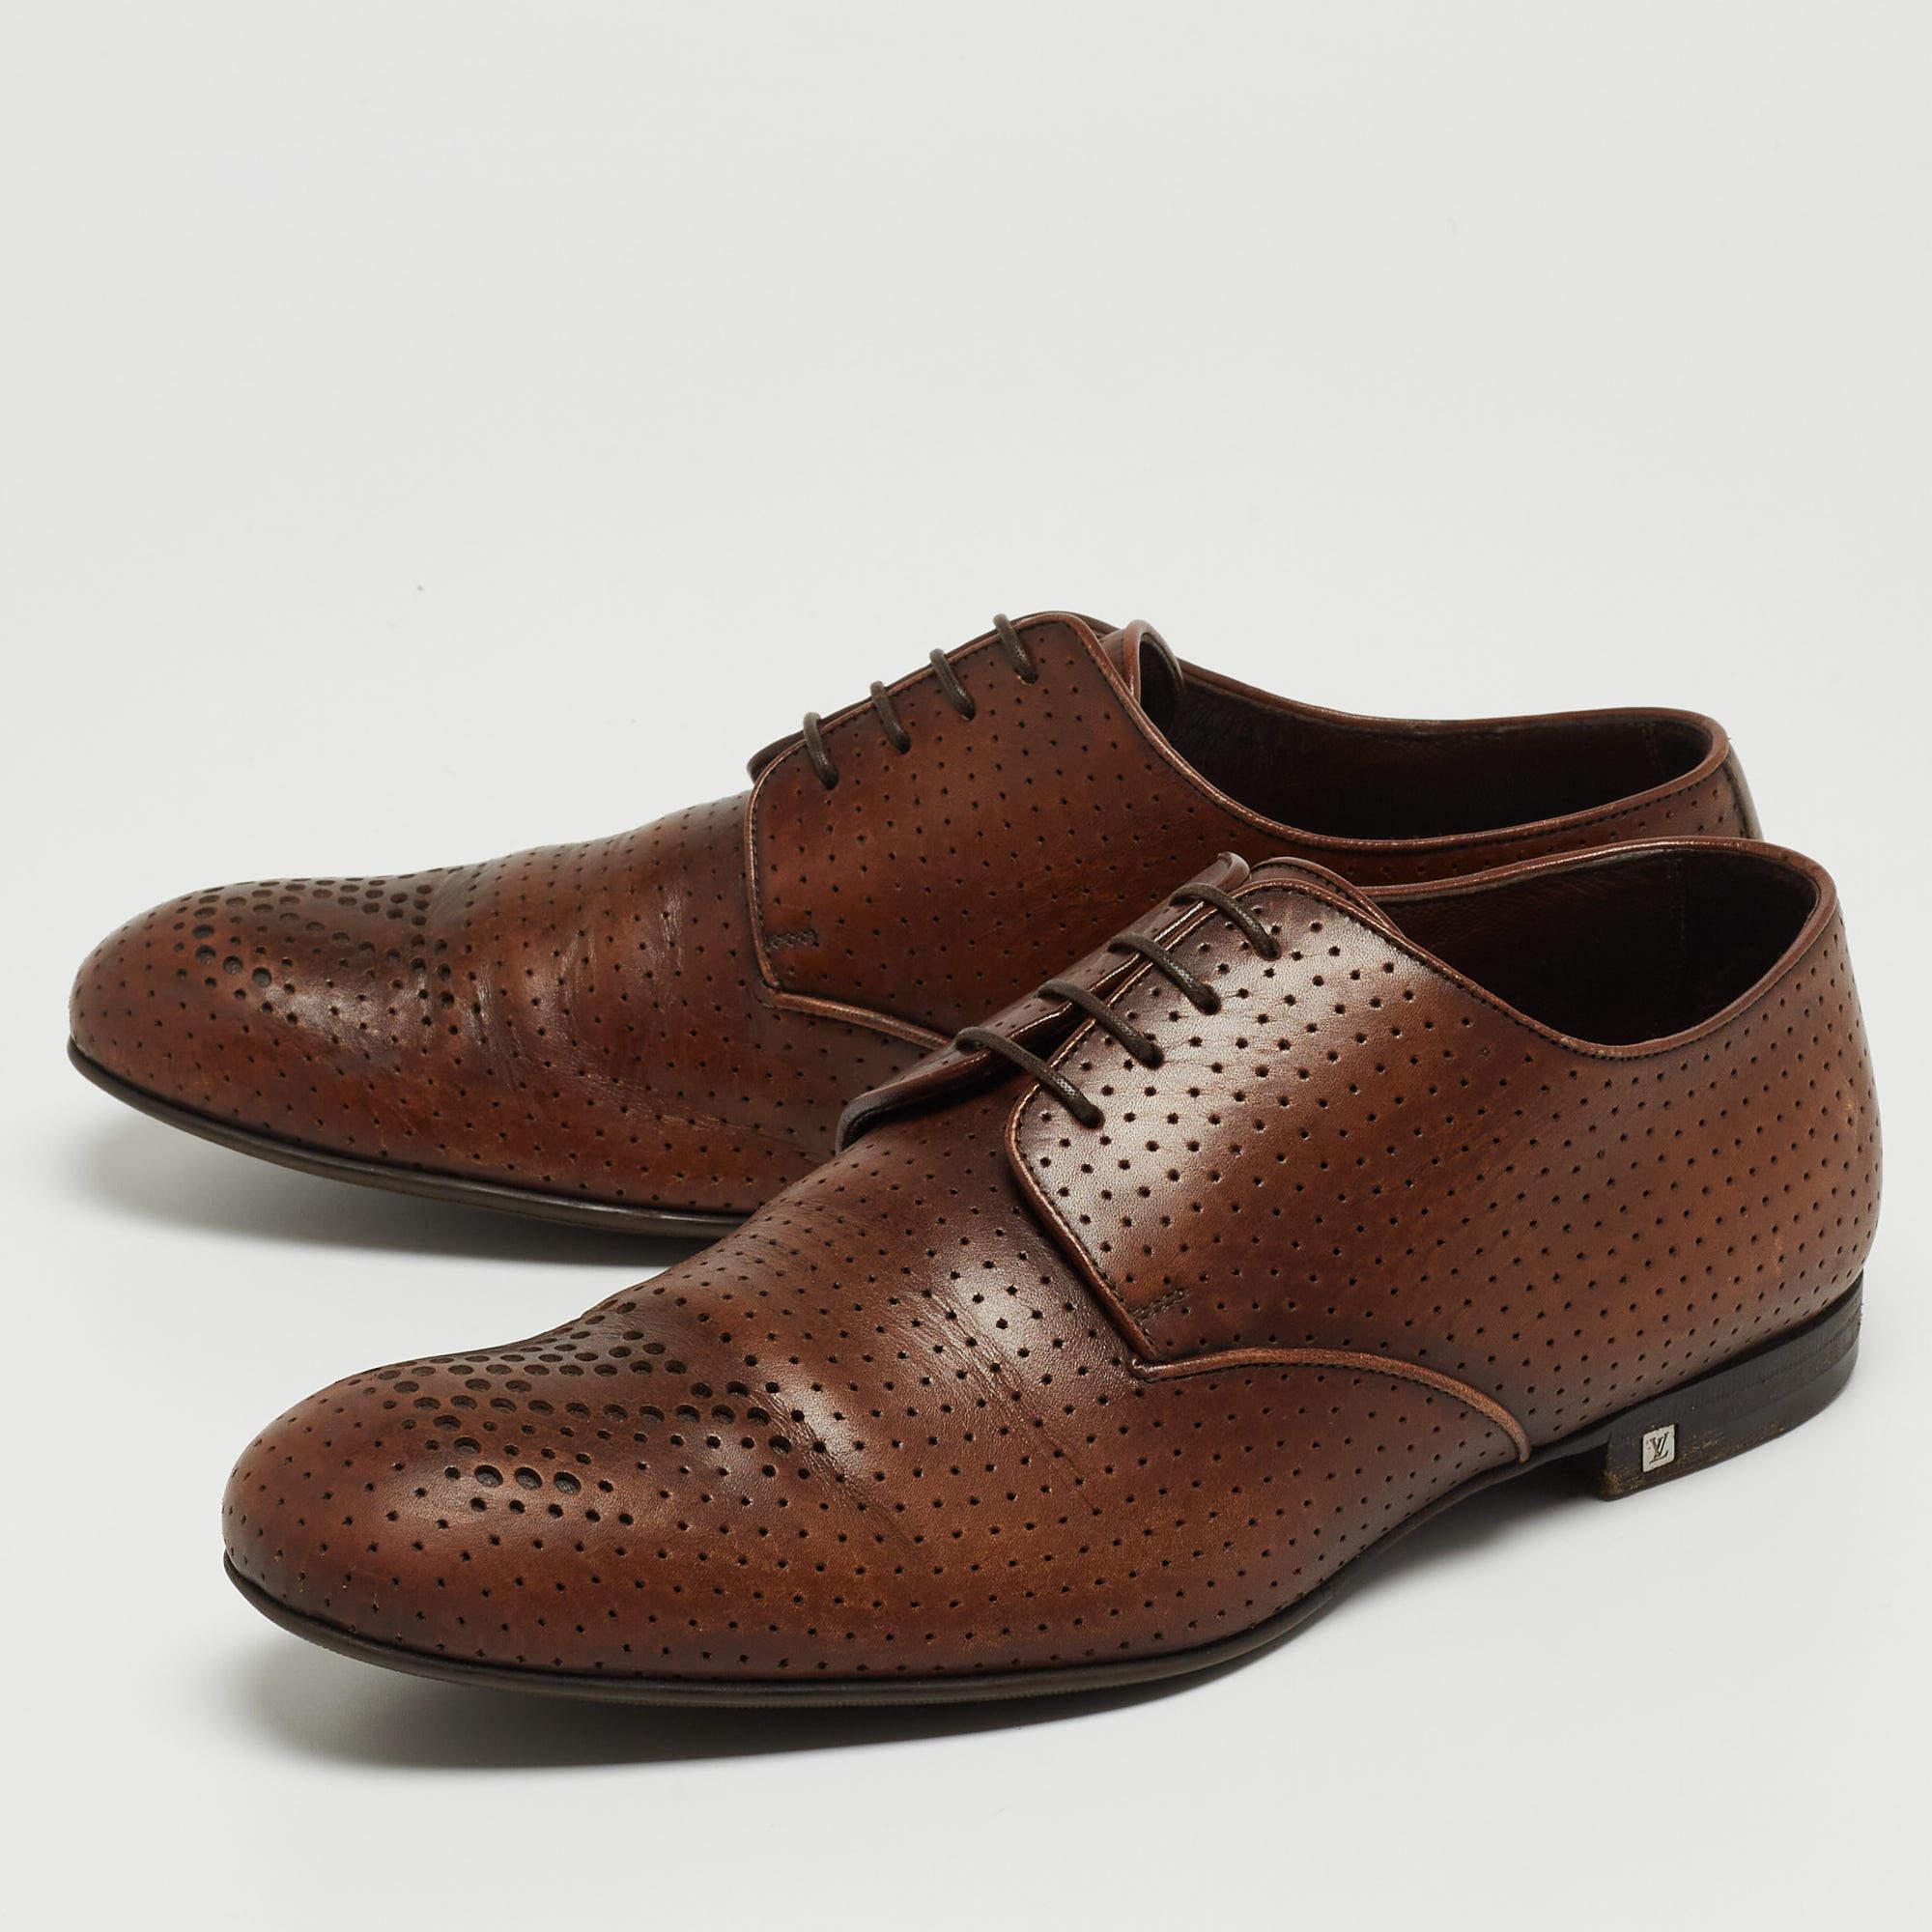 Ces chaussures derby Louis Vuitton ont pour but d'offrir un résultat à la mode. Fabriquées en cuir perforé marron et fermées par des lacets, ces chaussures sont aussi durables que séduisantes.

